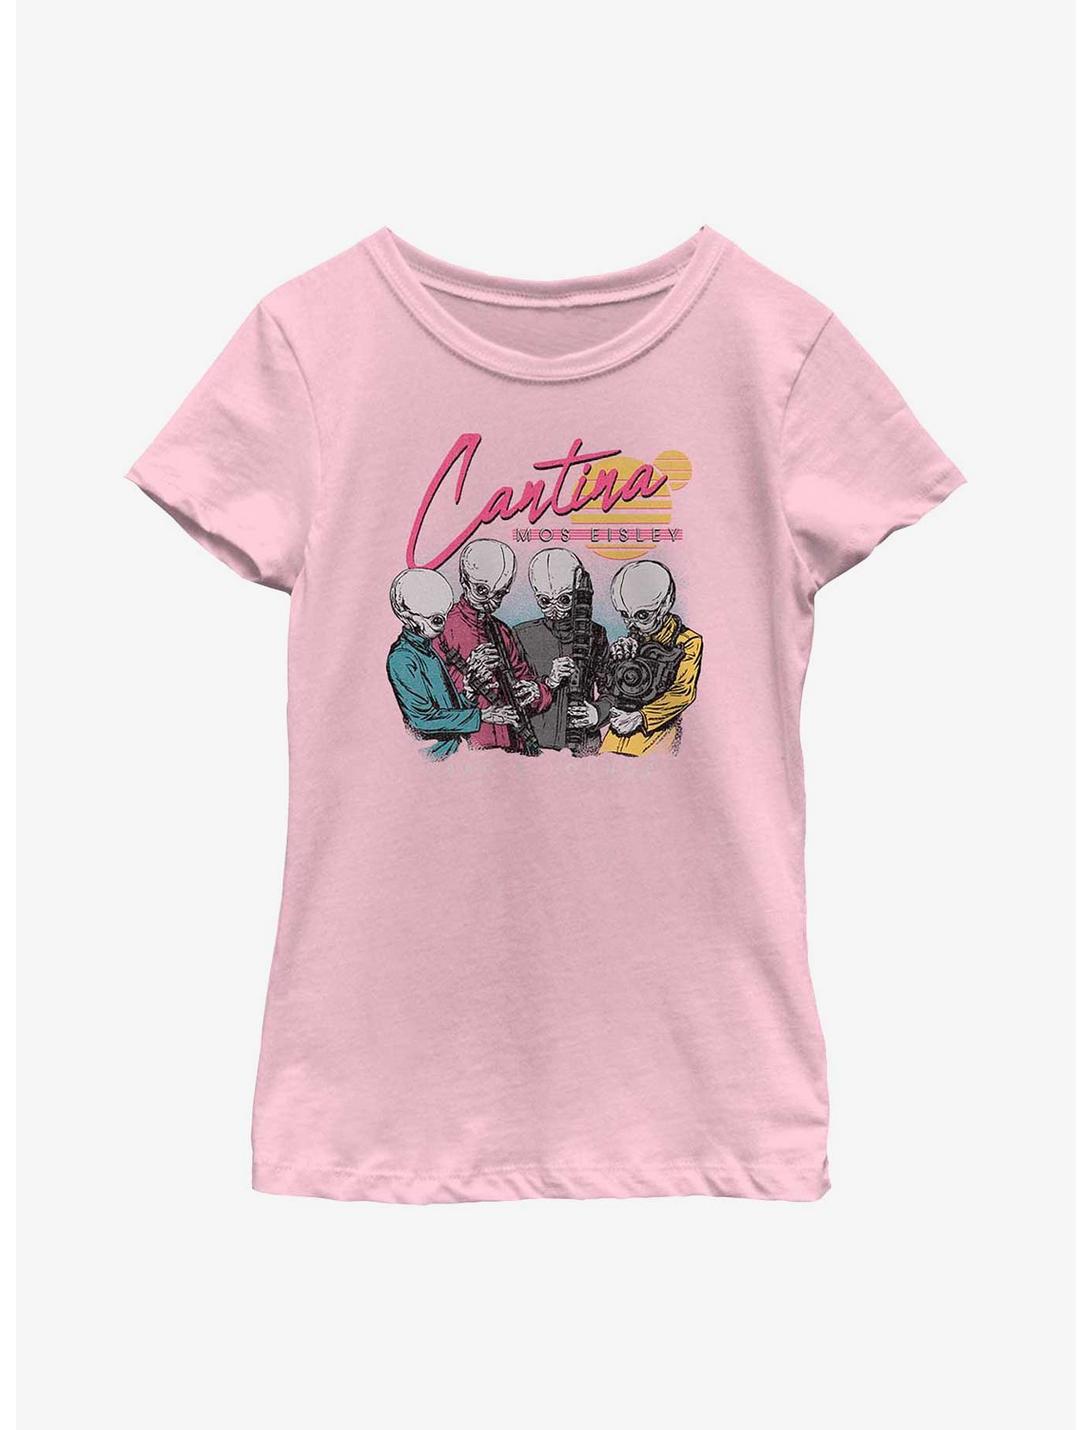 Star Wars Cantina Mos Eisley Youth Girls T-Shirt, PINK, hi-res